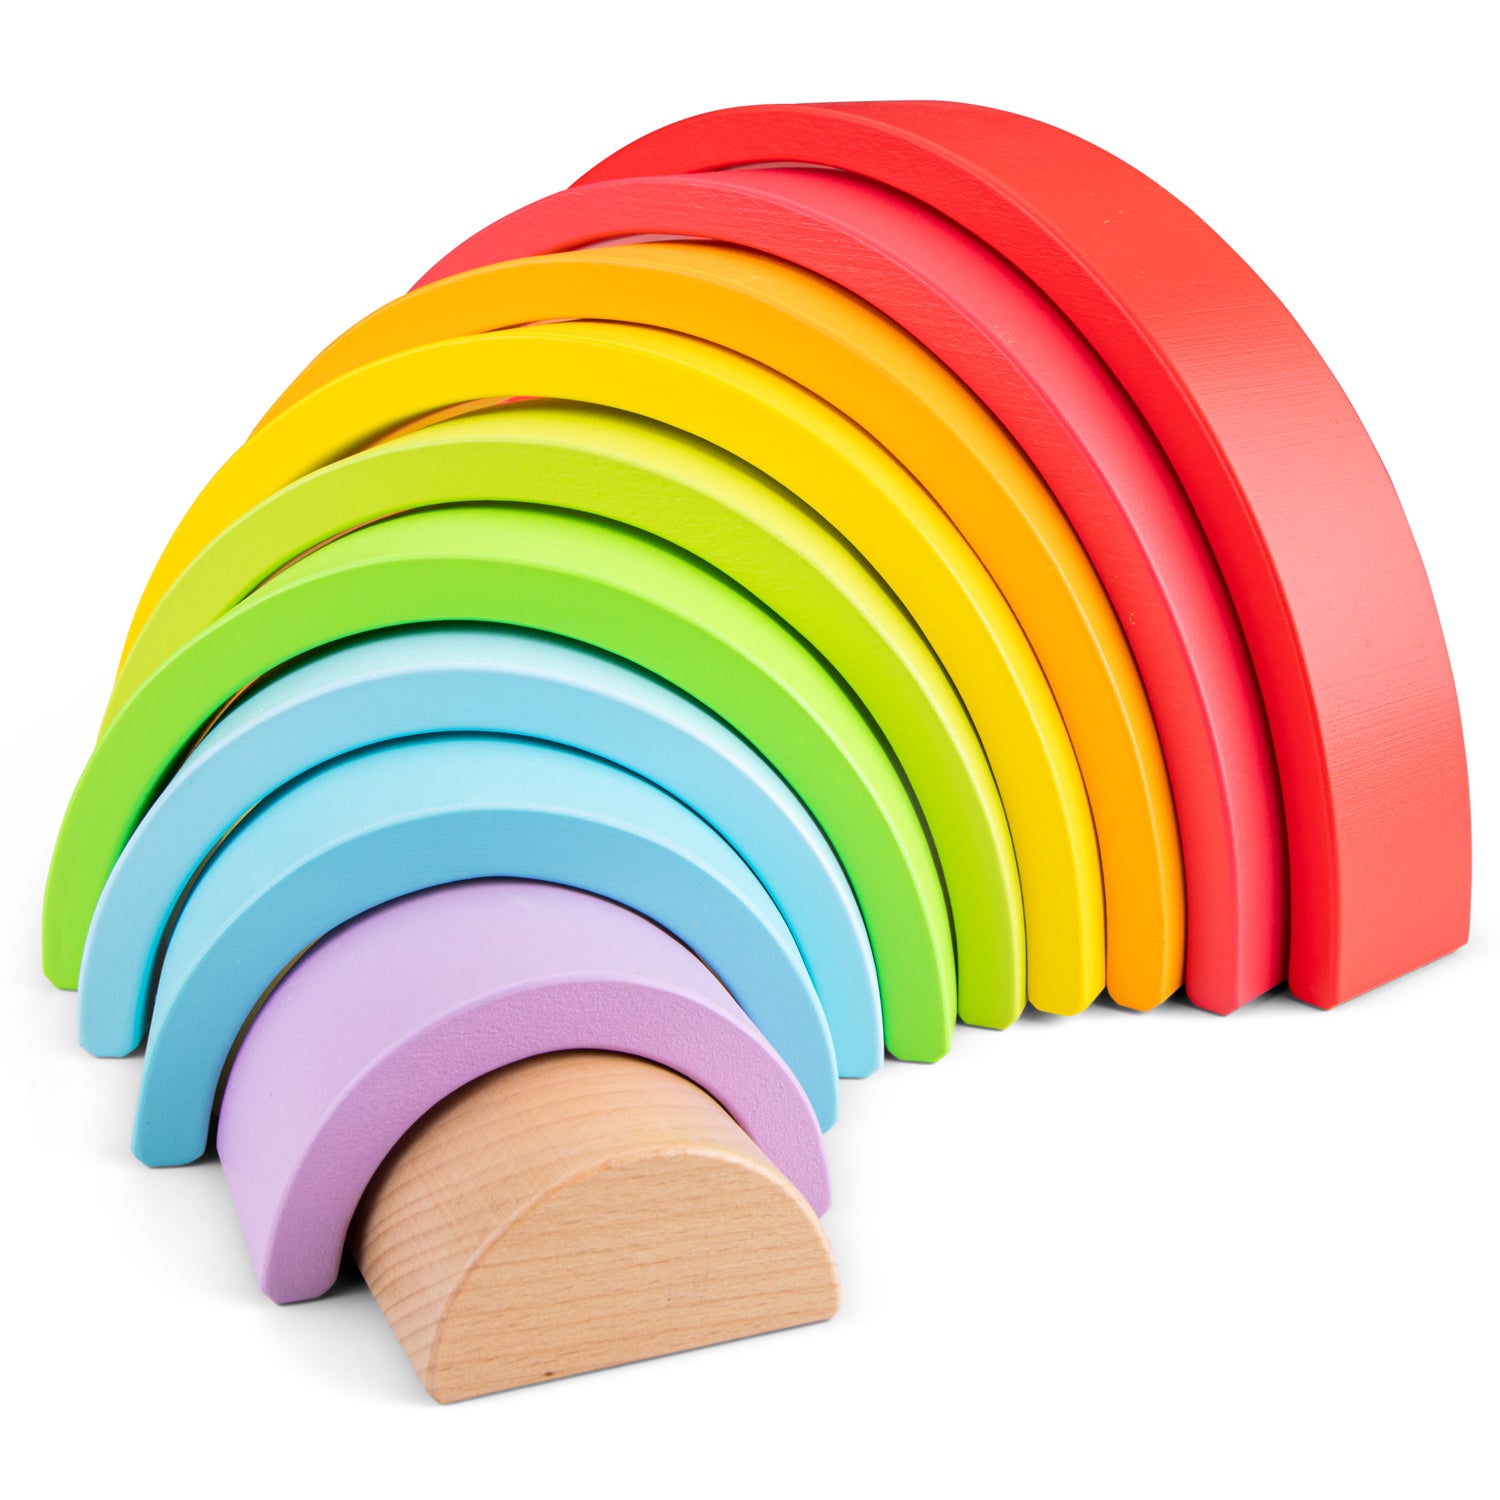 Regenbogen aus Holz